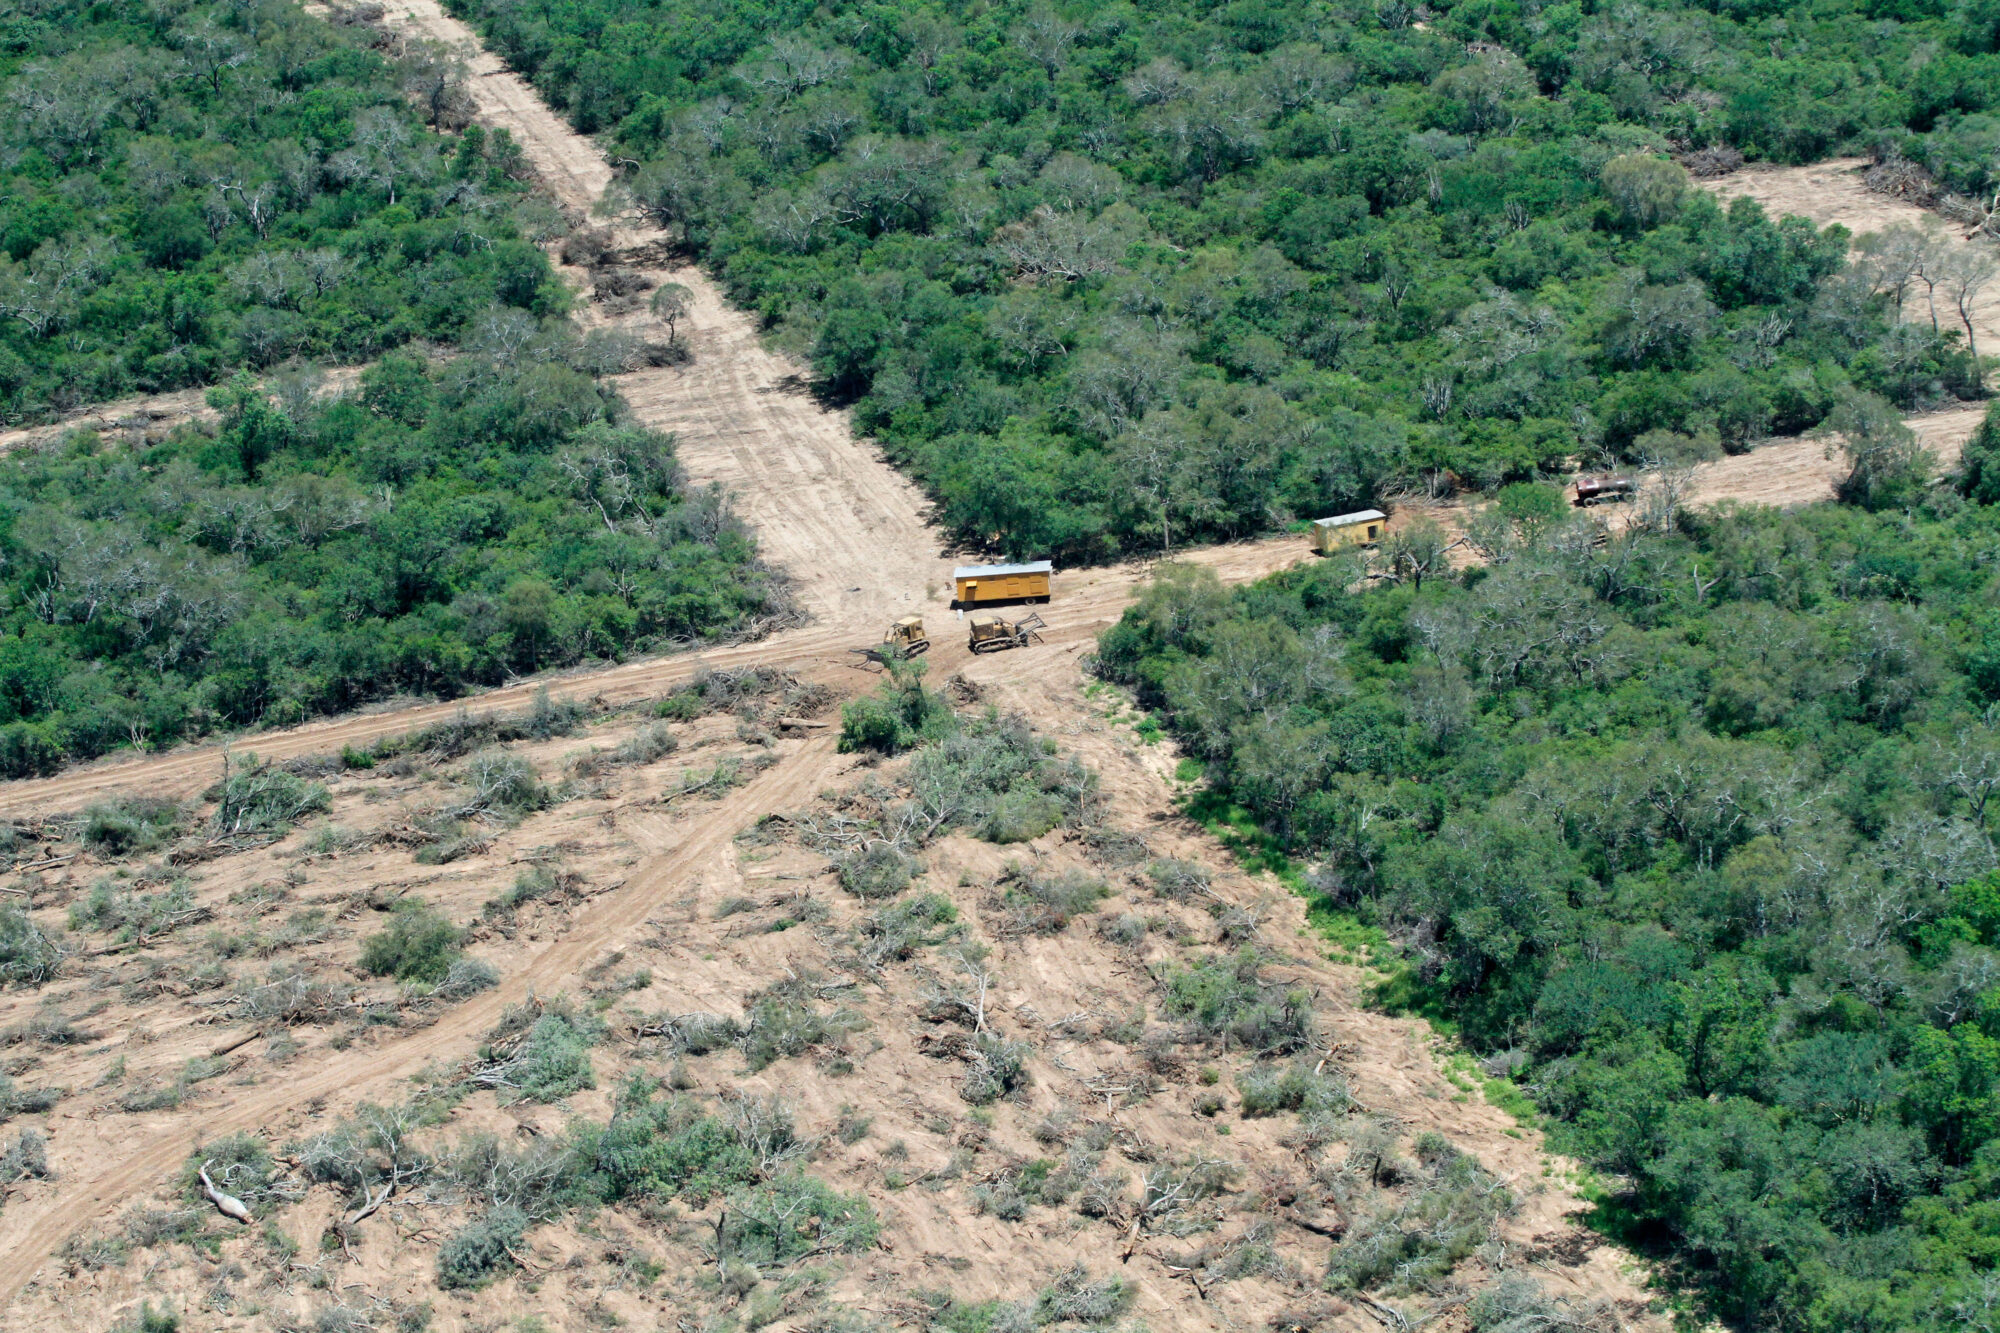 <p>Deforestación en el Gran Chaco, cerca de Mariscal Estigarribia, Paraguay. Alrededor de una cuarta parte de la superficie del Gran Chaco ha sido deforestada desde 1985. La producción de soja y la ganadería son los principales impulsores de la pérdida de bosques. (Imagen: Michael Edwards / Alamy)</p>